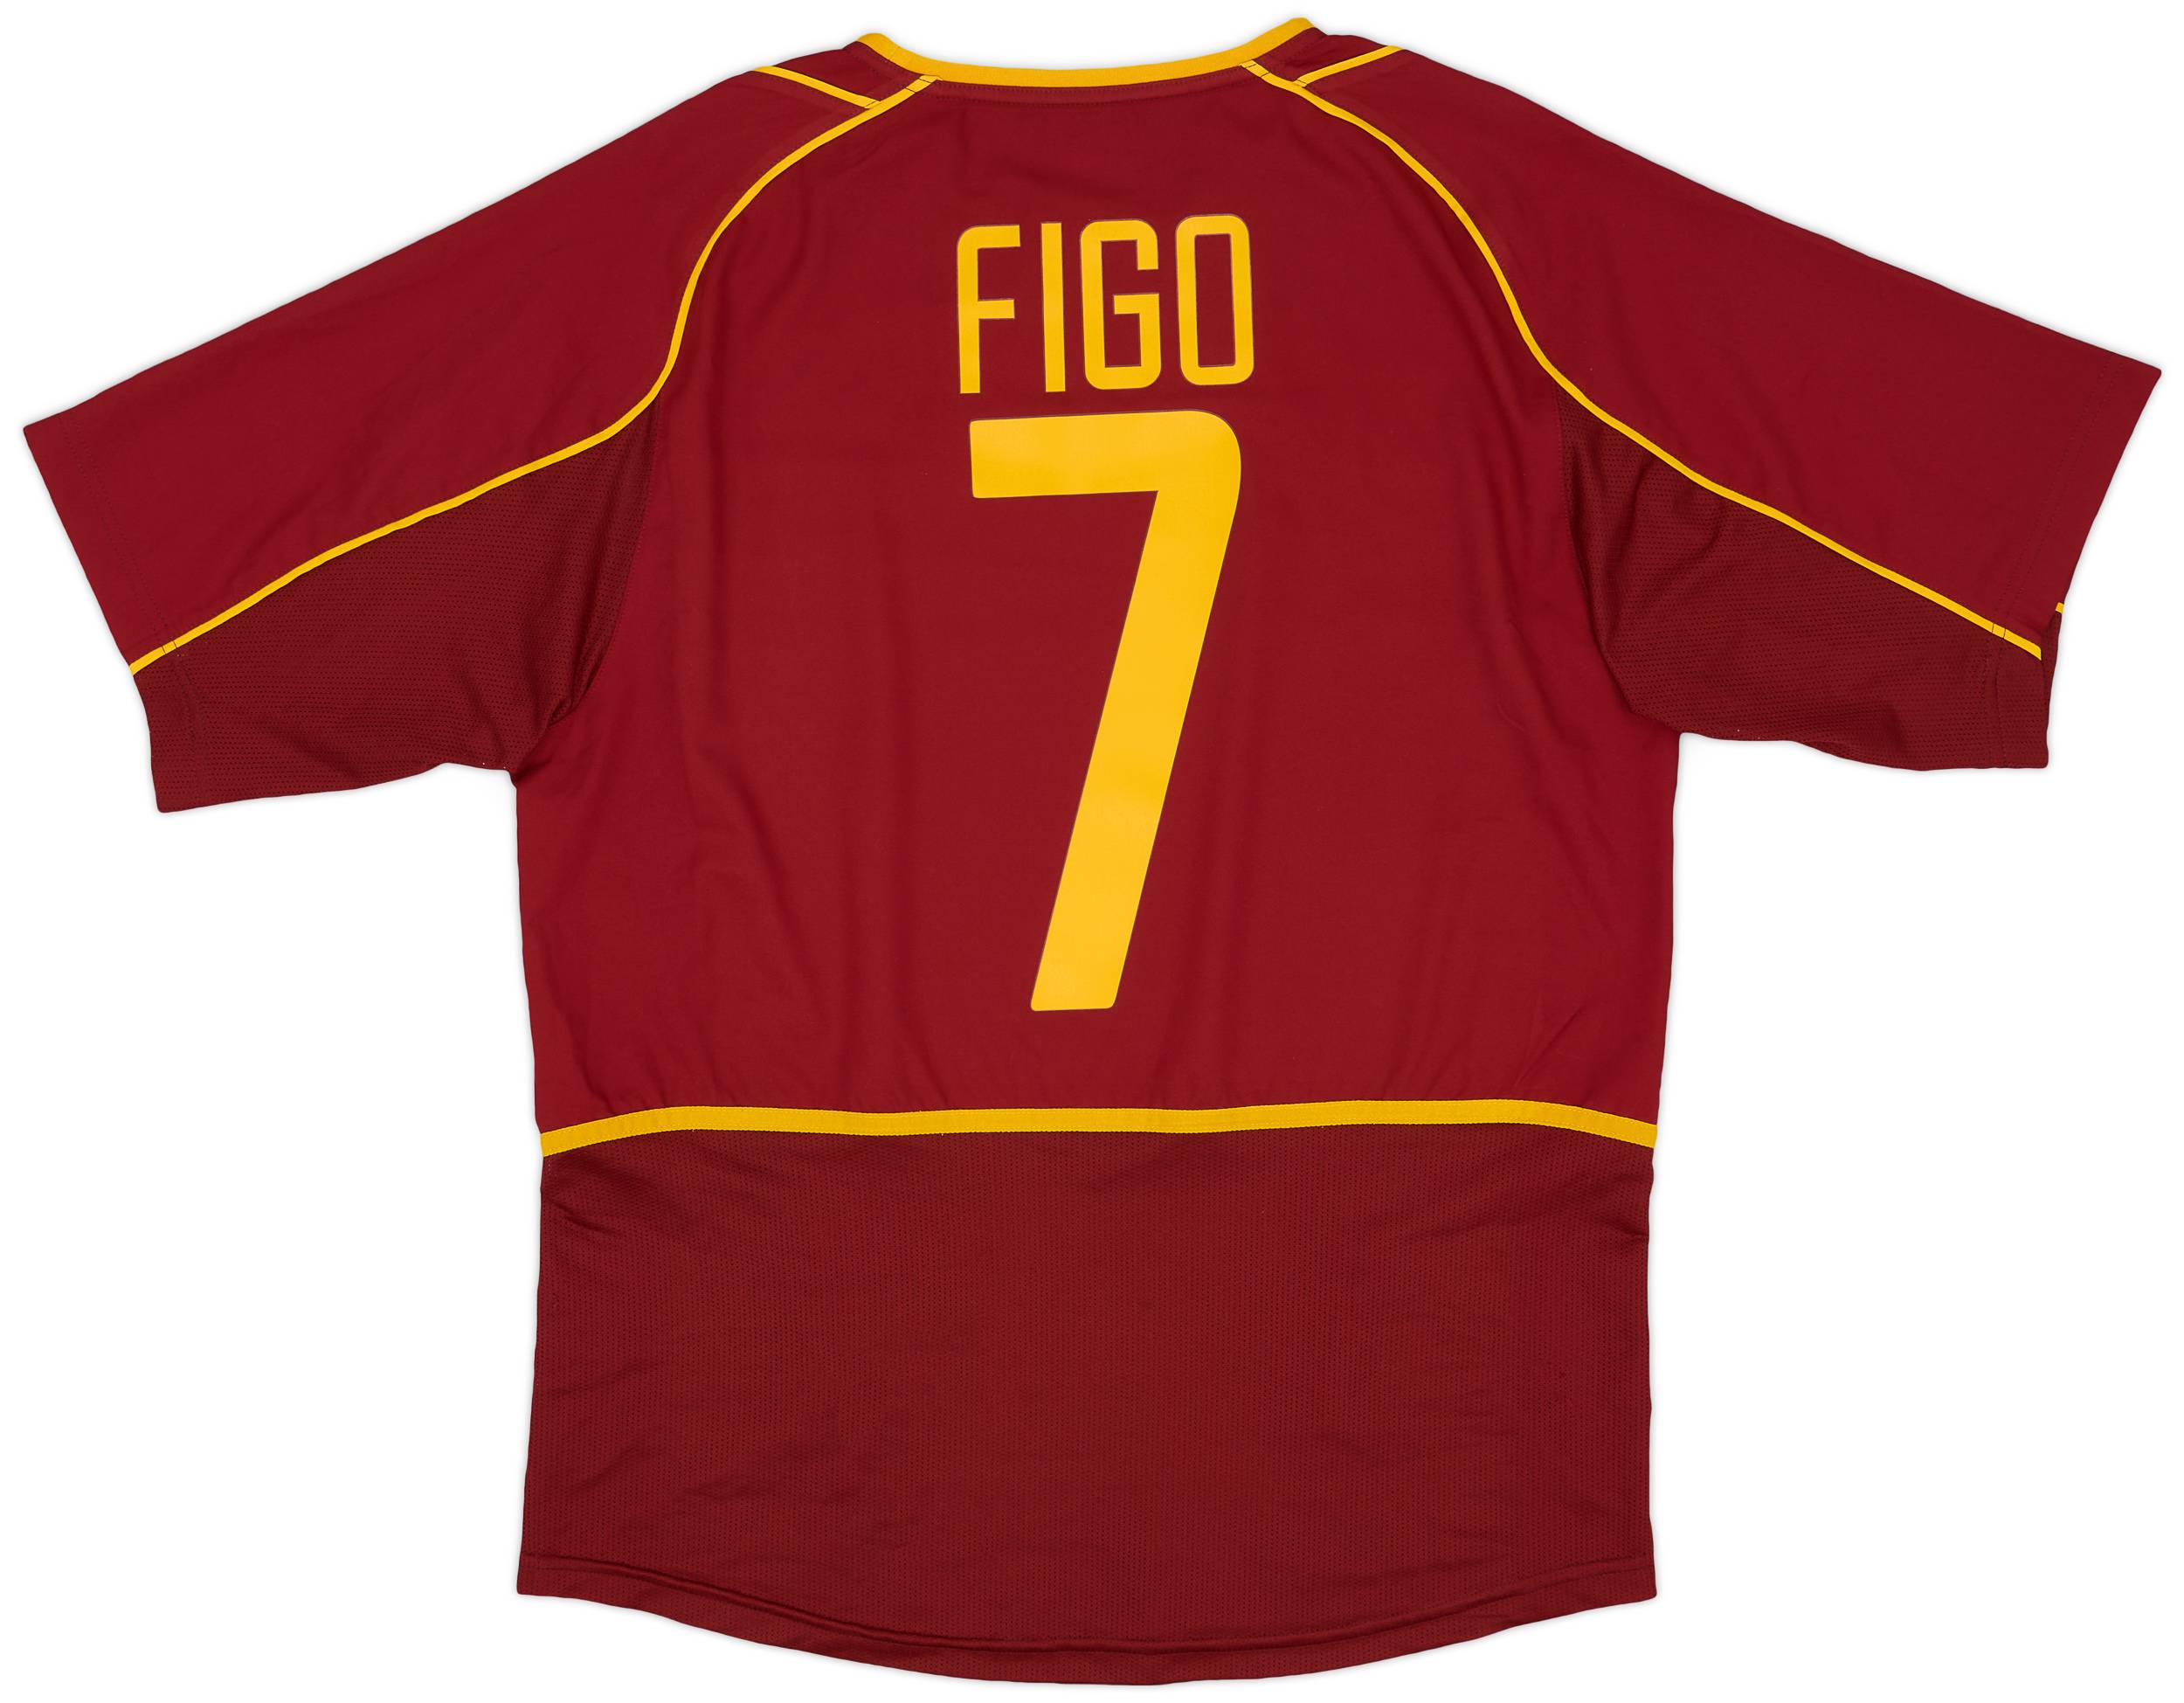 2002-04 Portugal Home Shirt Figo #7 - 9/10 - (M)